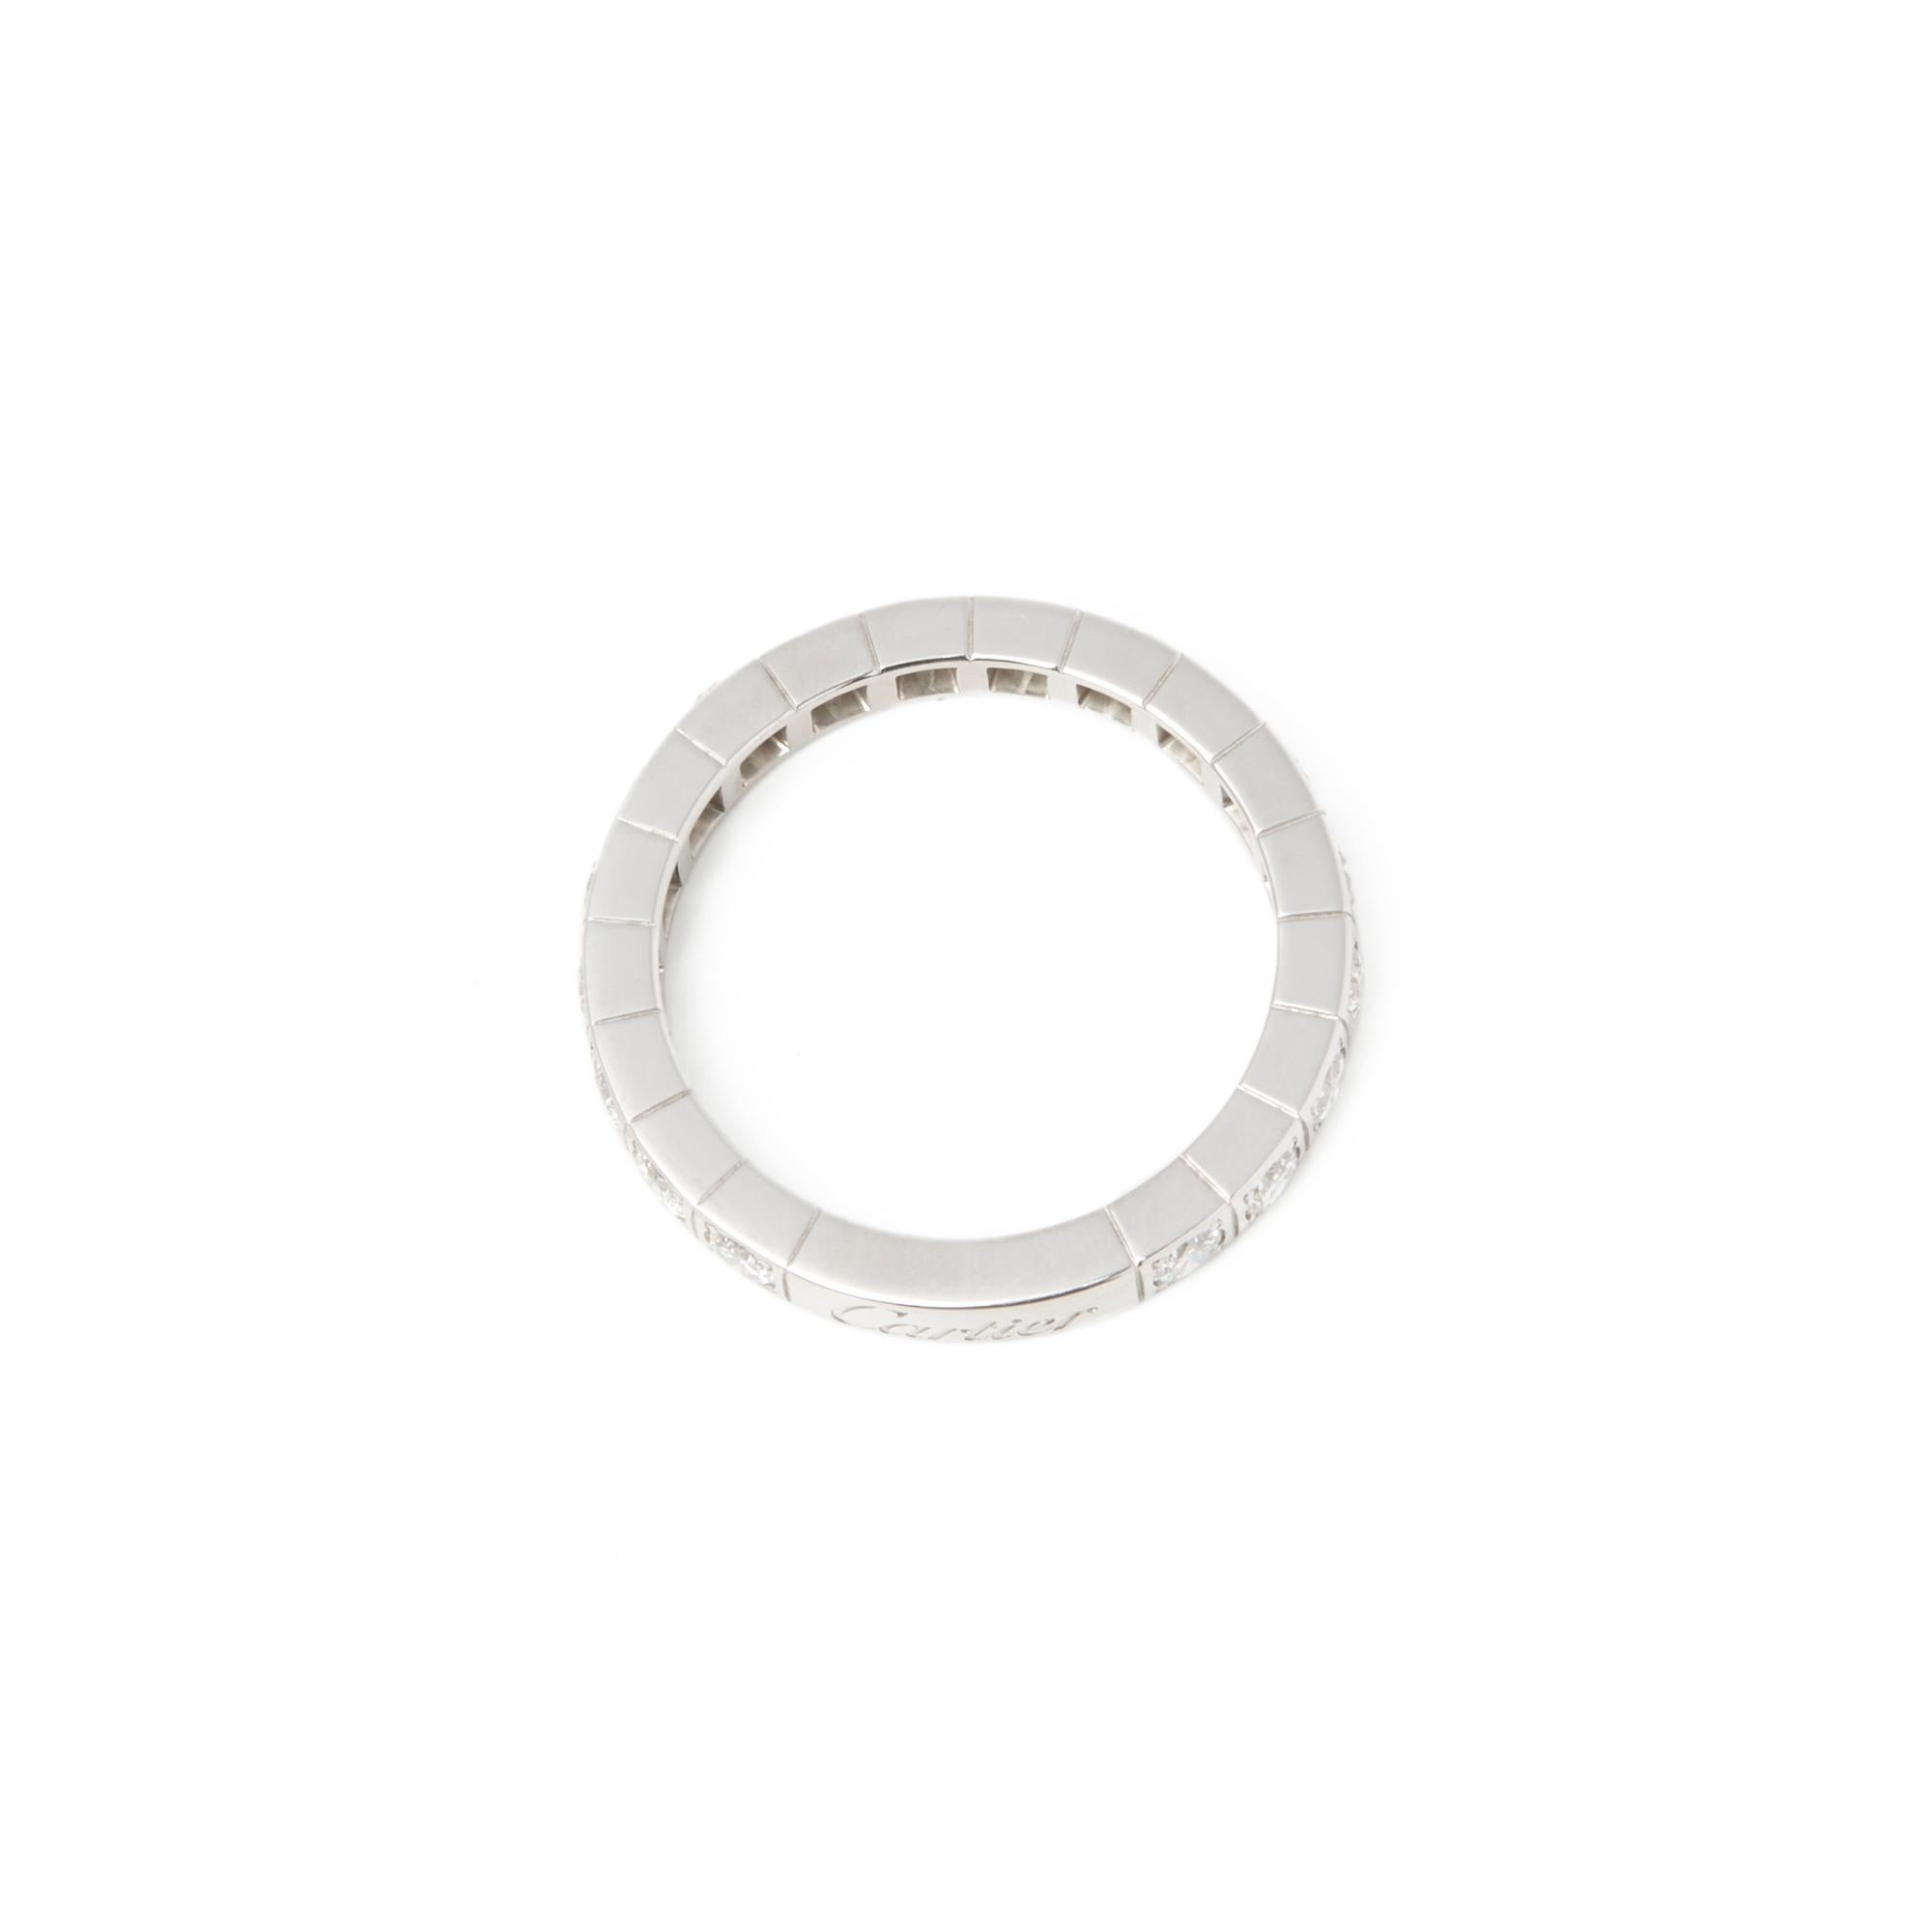 Cartier 18 Karat White Gold Round Cut Diamond Lanieres Band Ring 2